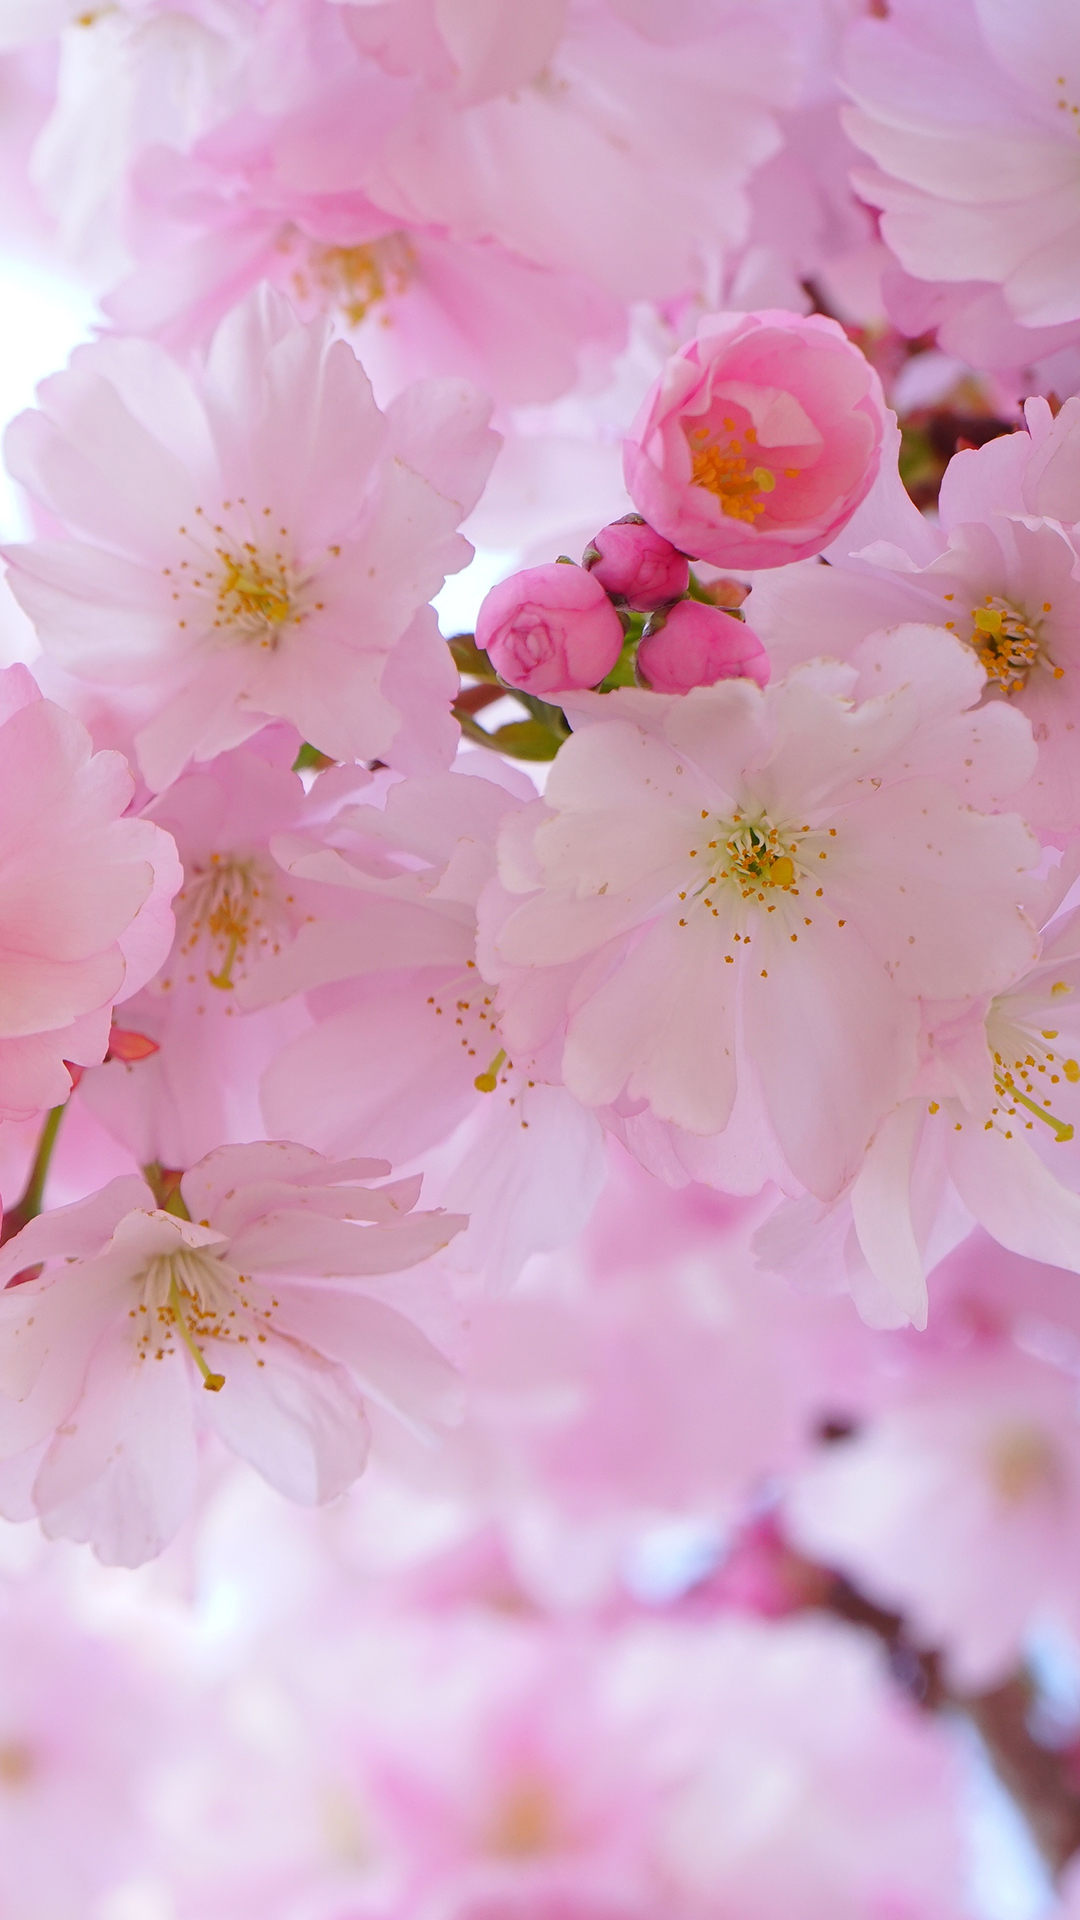 kirsche handy wallpaper,blume,blütenblatt,blühen,rosa,kirschblüte